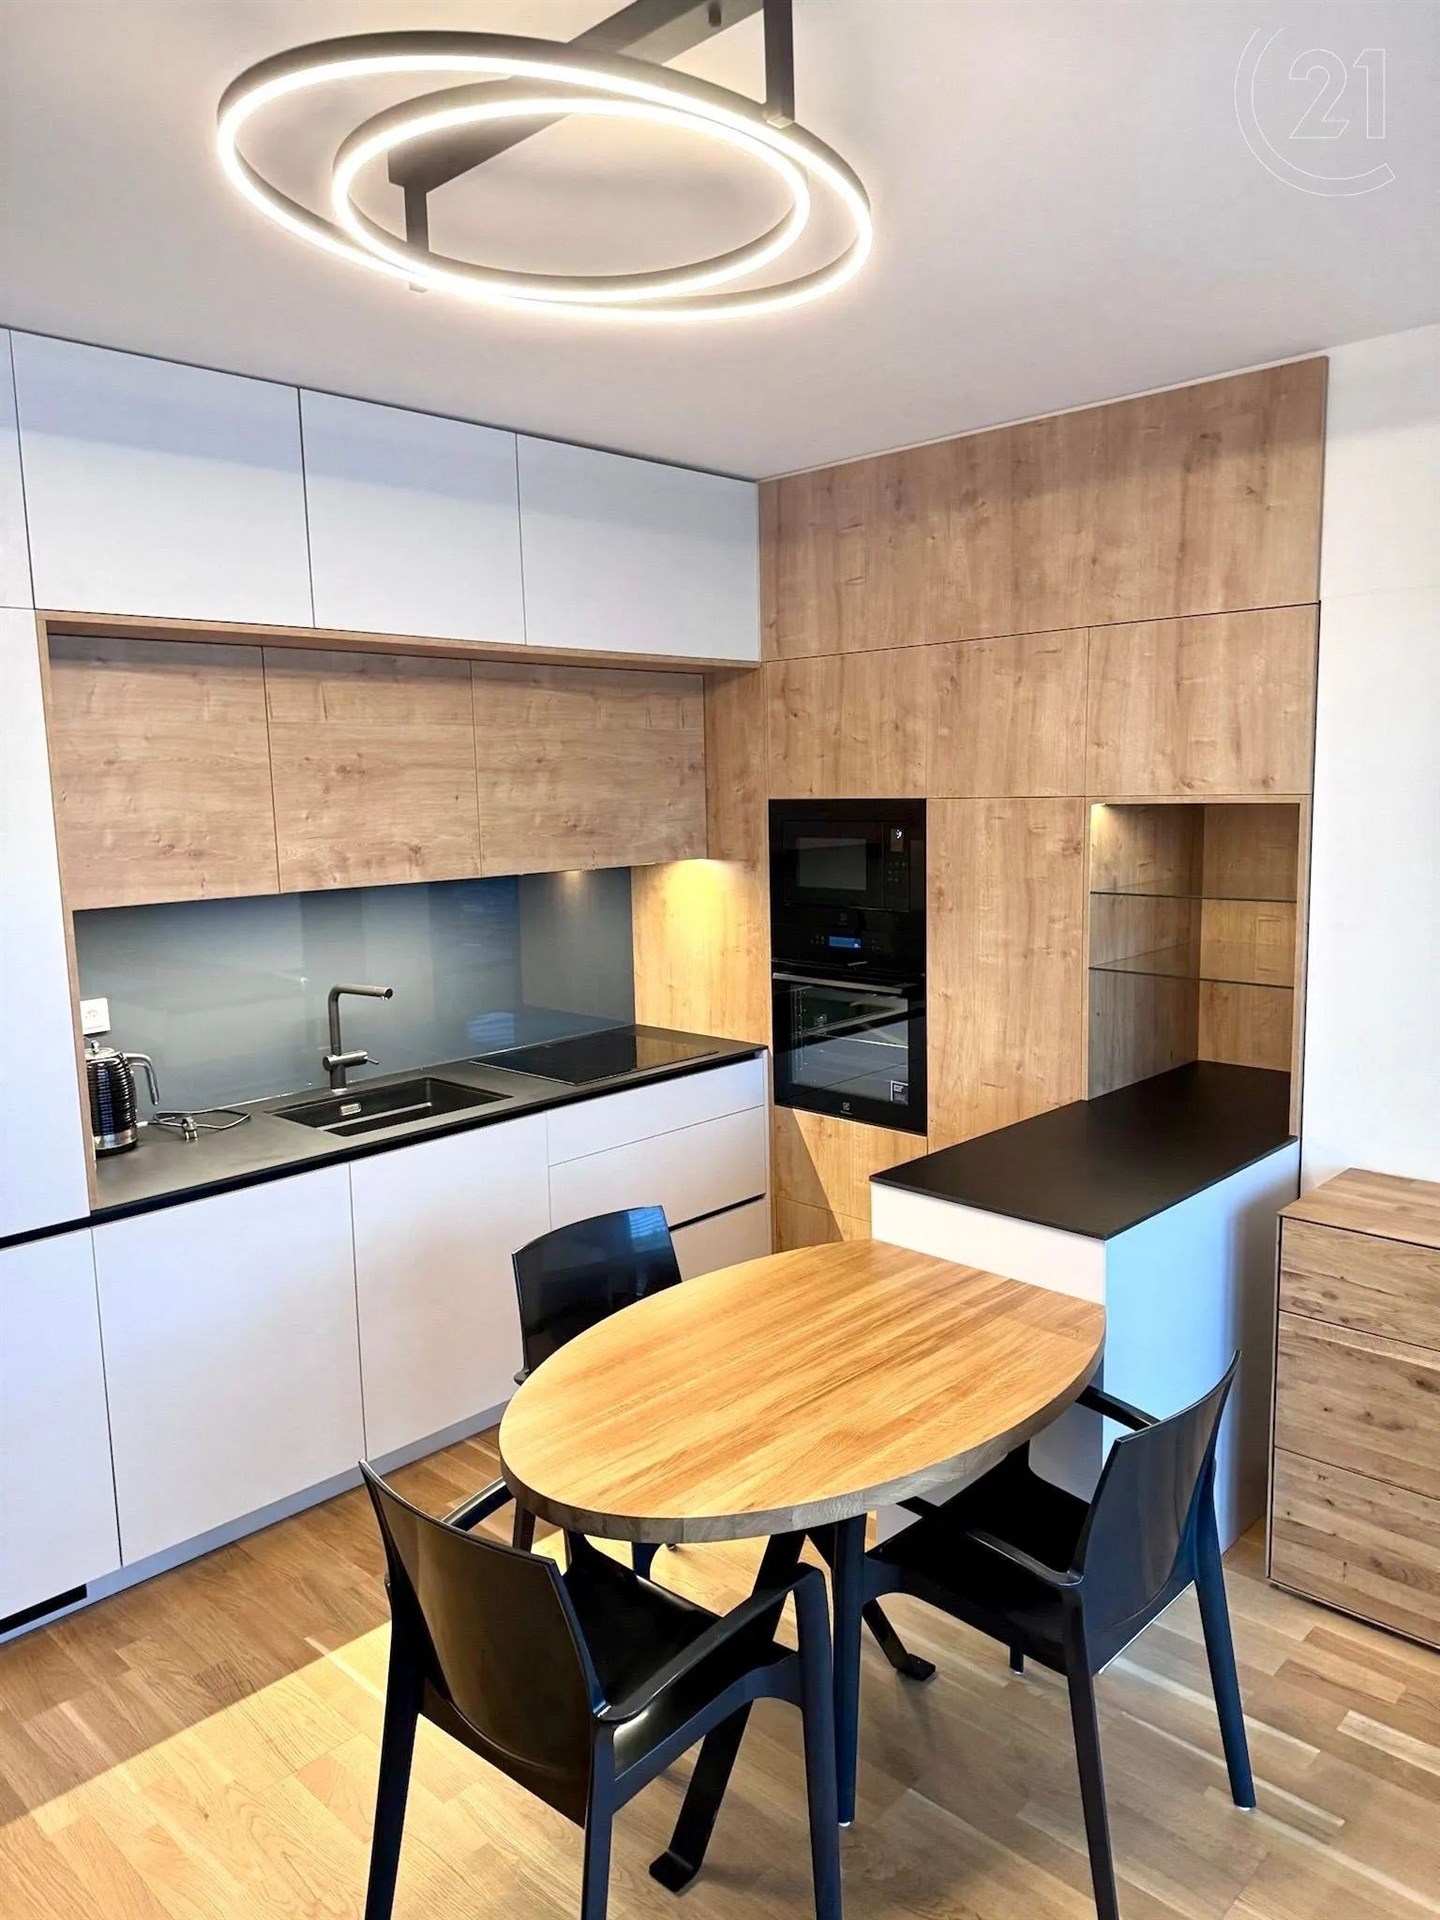 kuchyně s dvojitá trouba, ploché panelové skříňky, dřevěná podlaha, světle hnědé skříně, a dřez